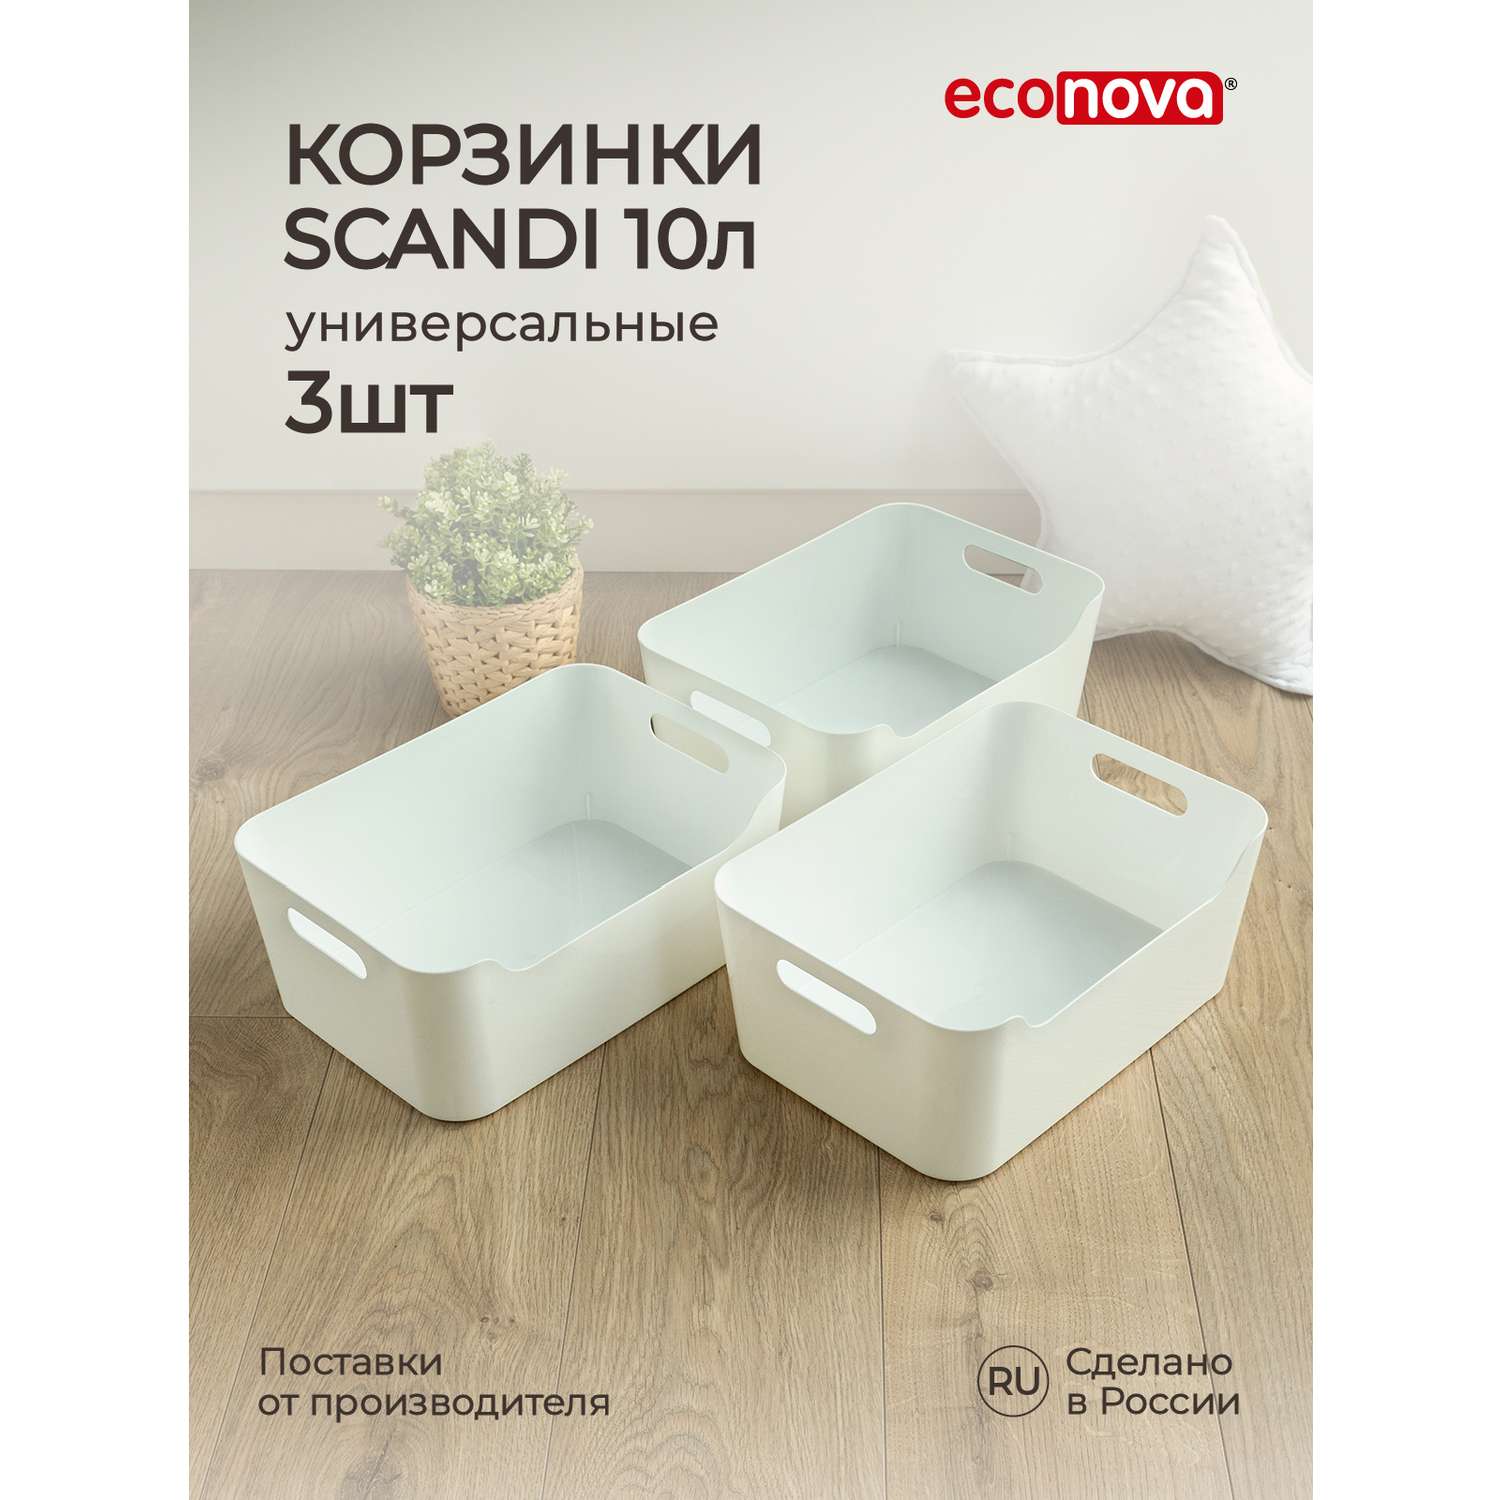 Комплект корзинок Econova универсальных Scandi 340x240x140 мм 10л 3шт белый - фото 1